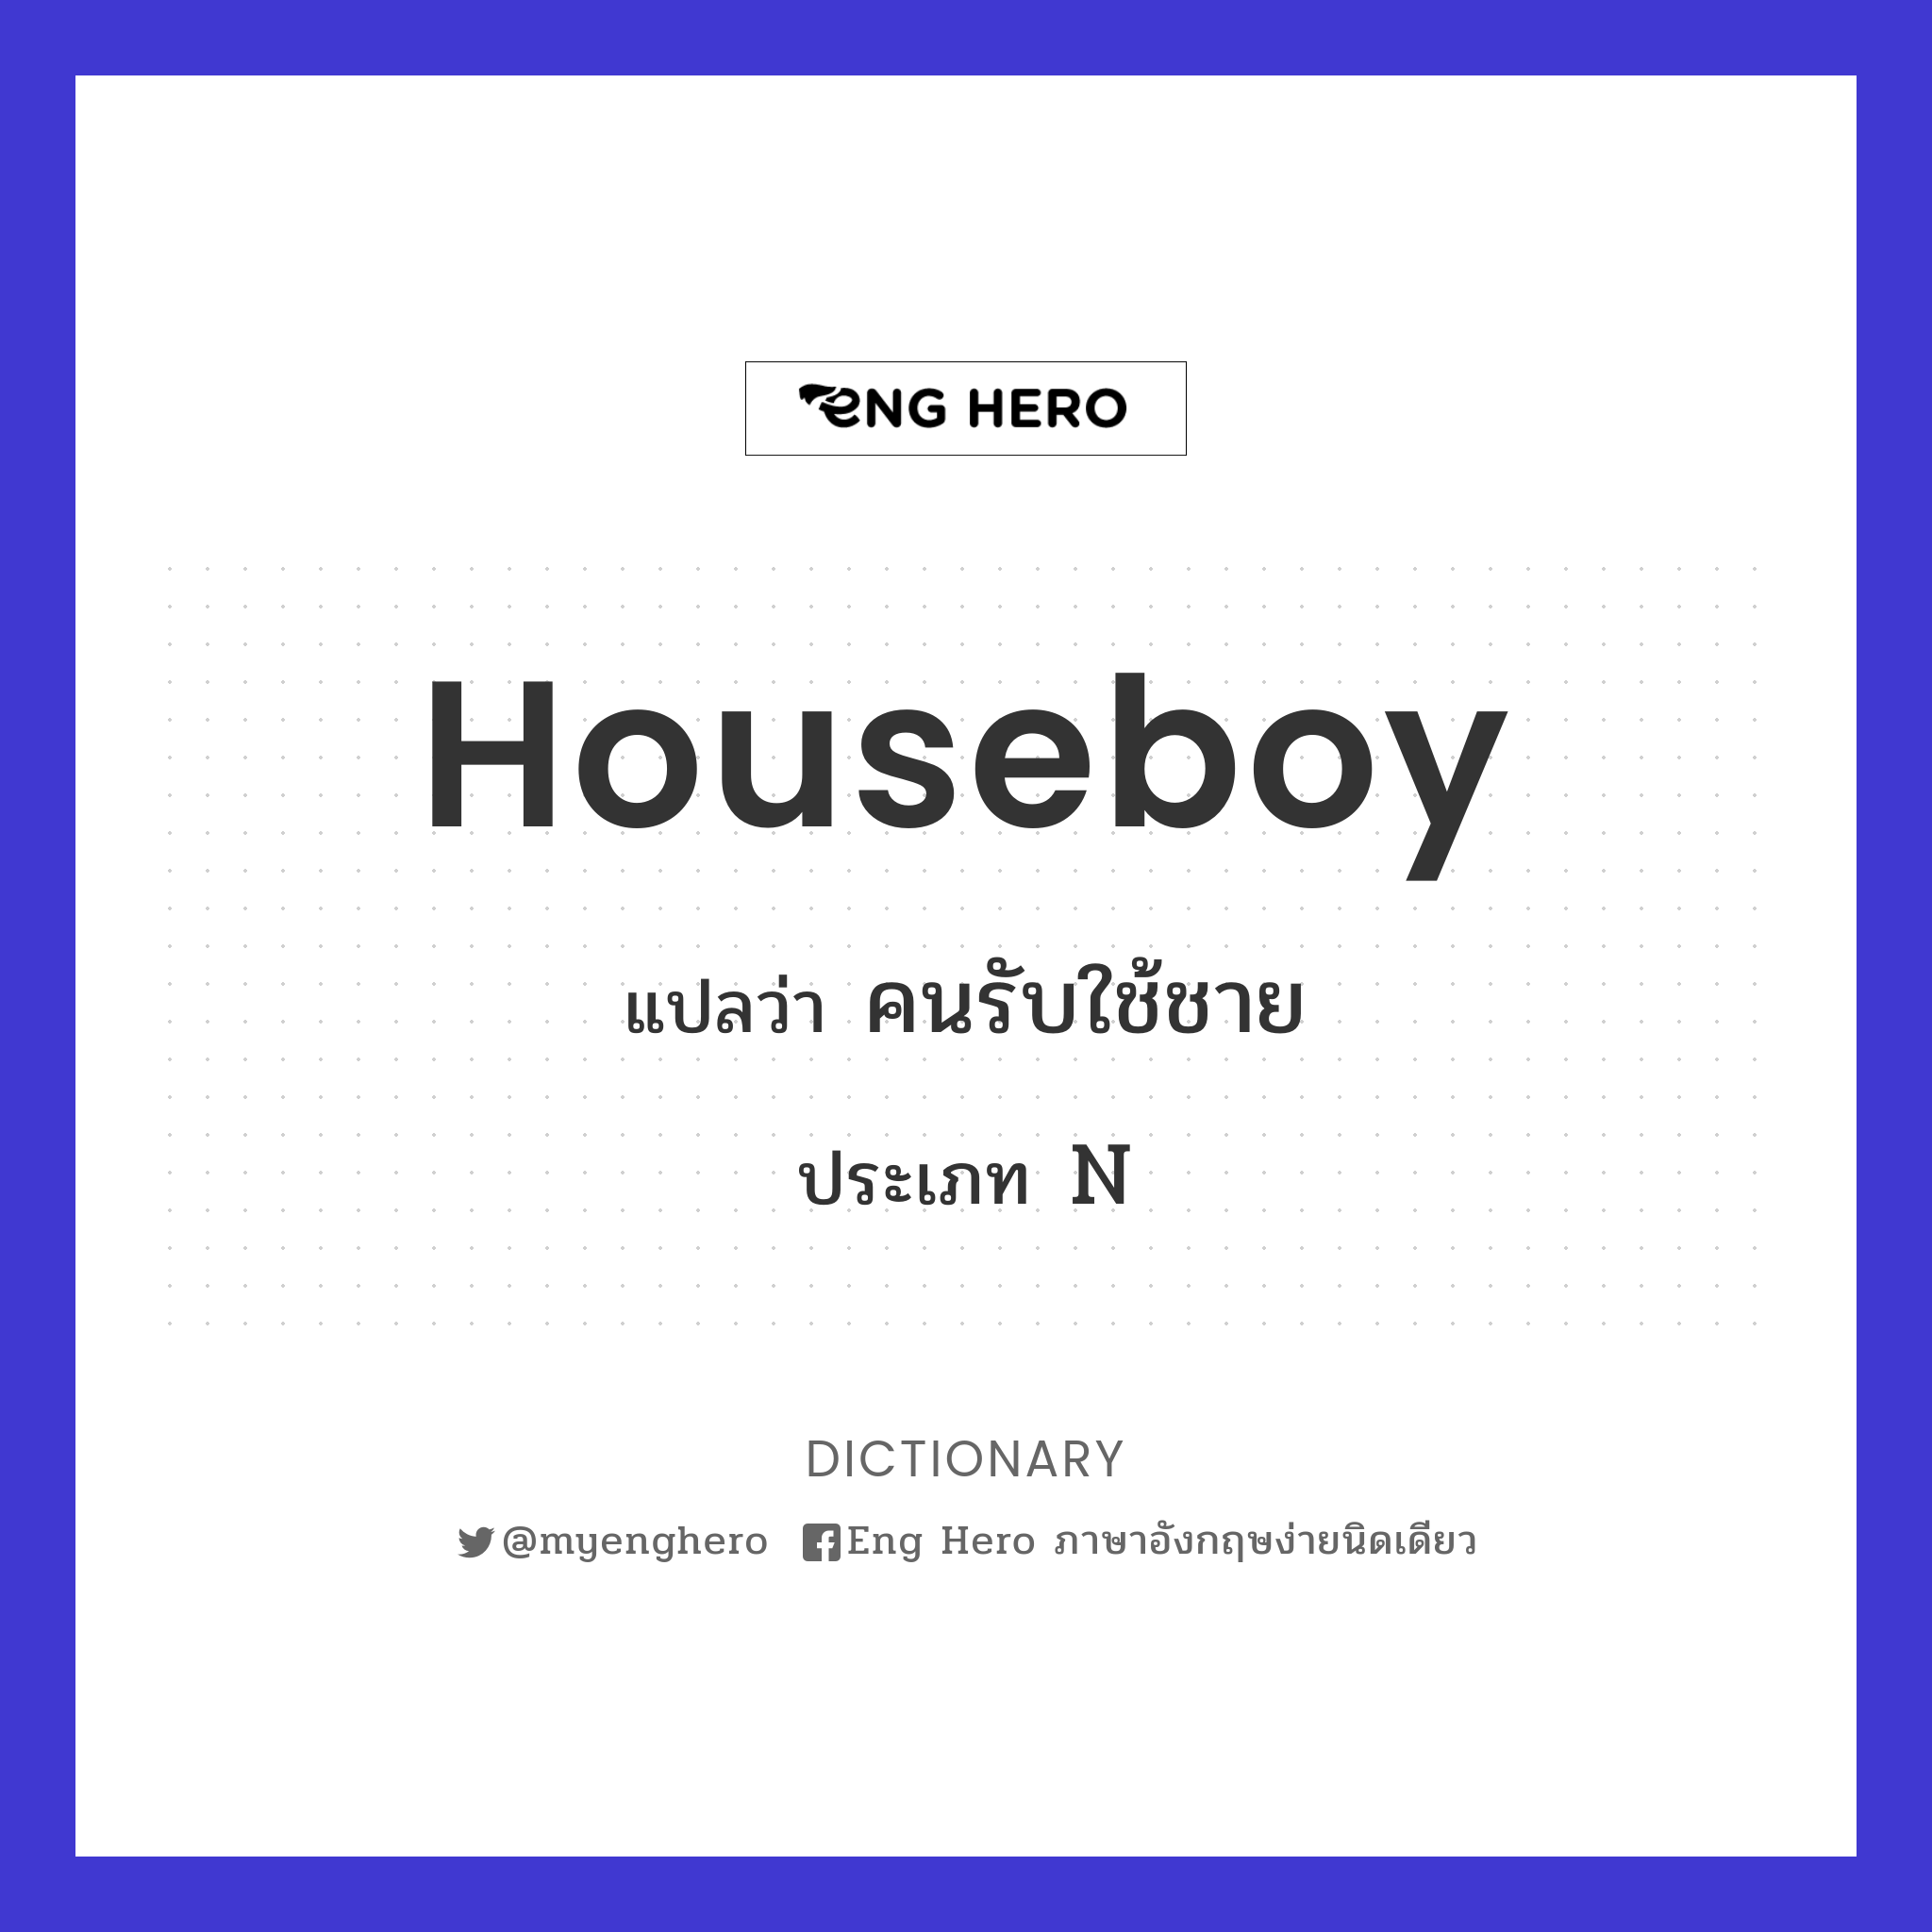 houseboy